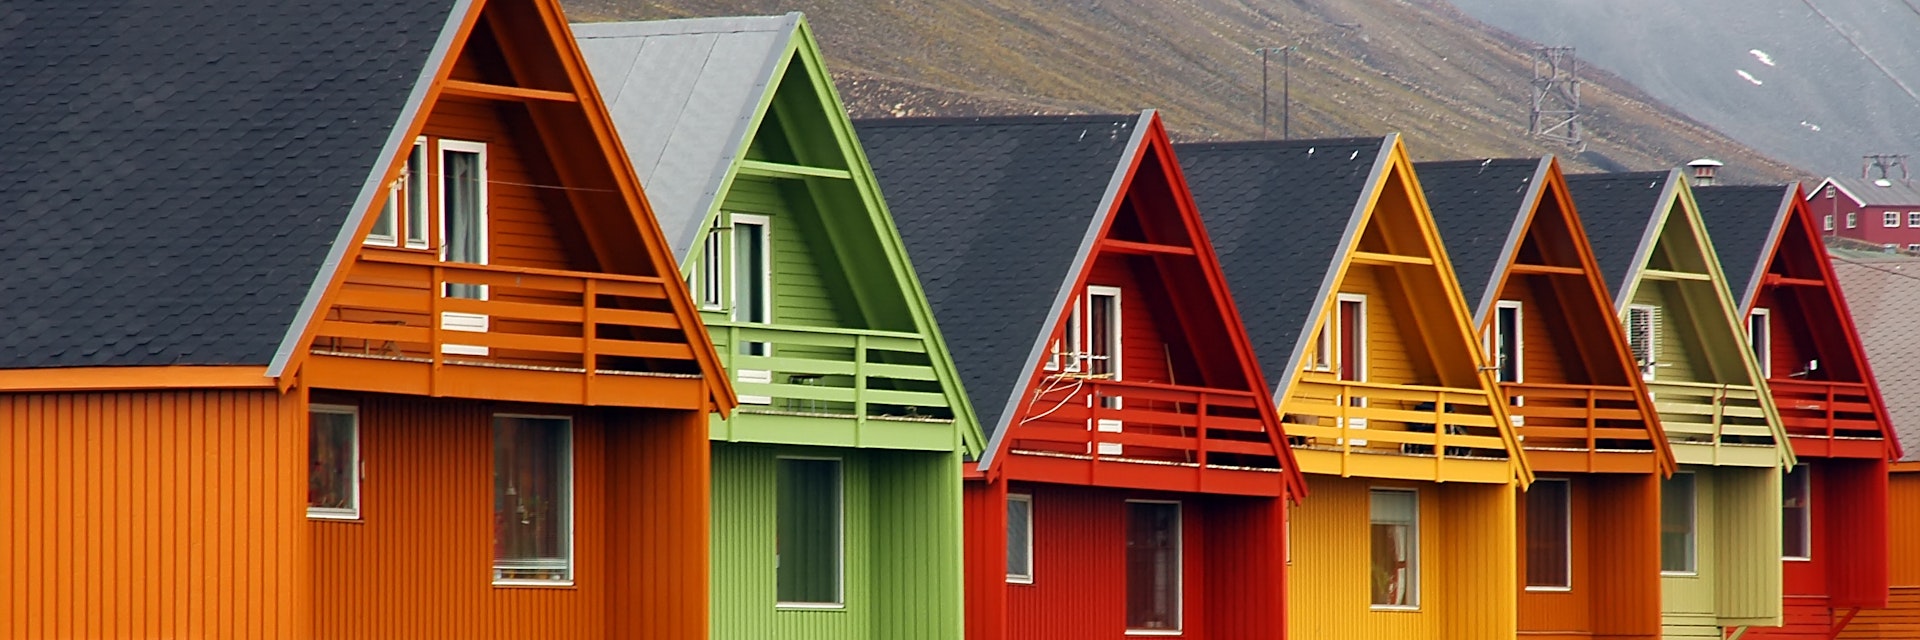 Longyearbyen - Arctic colors